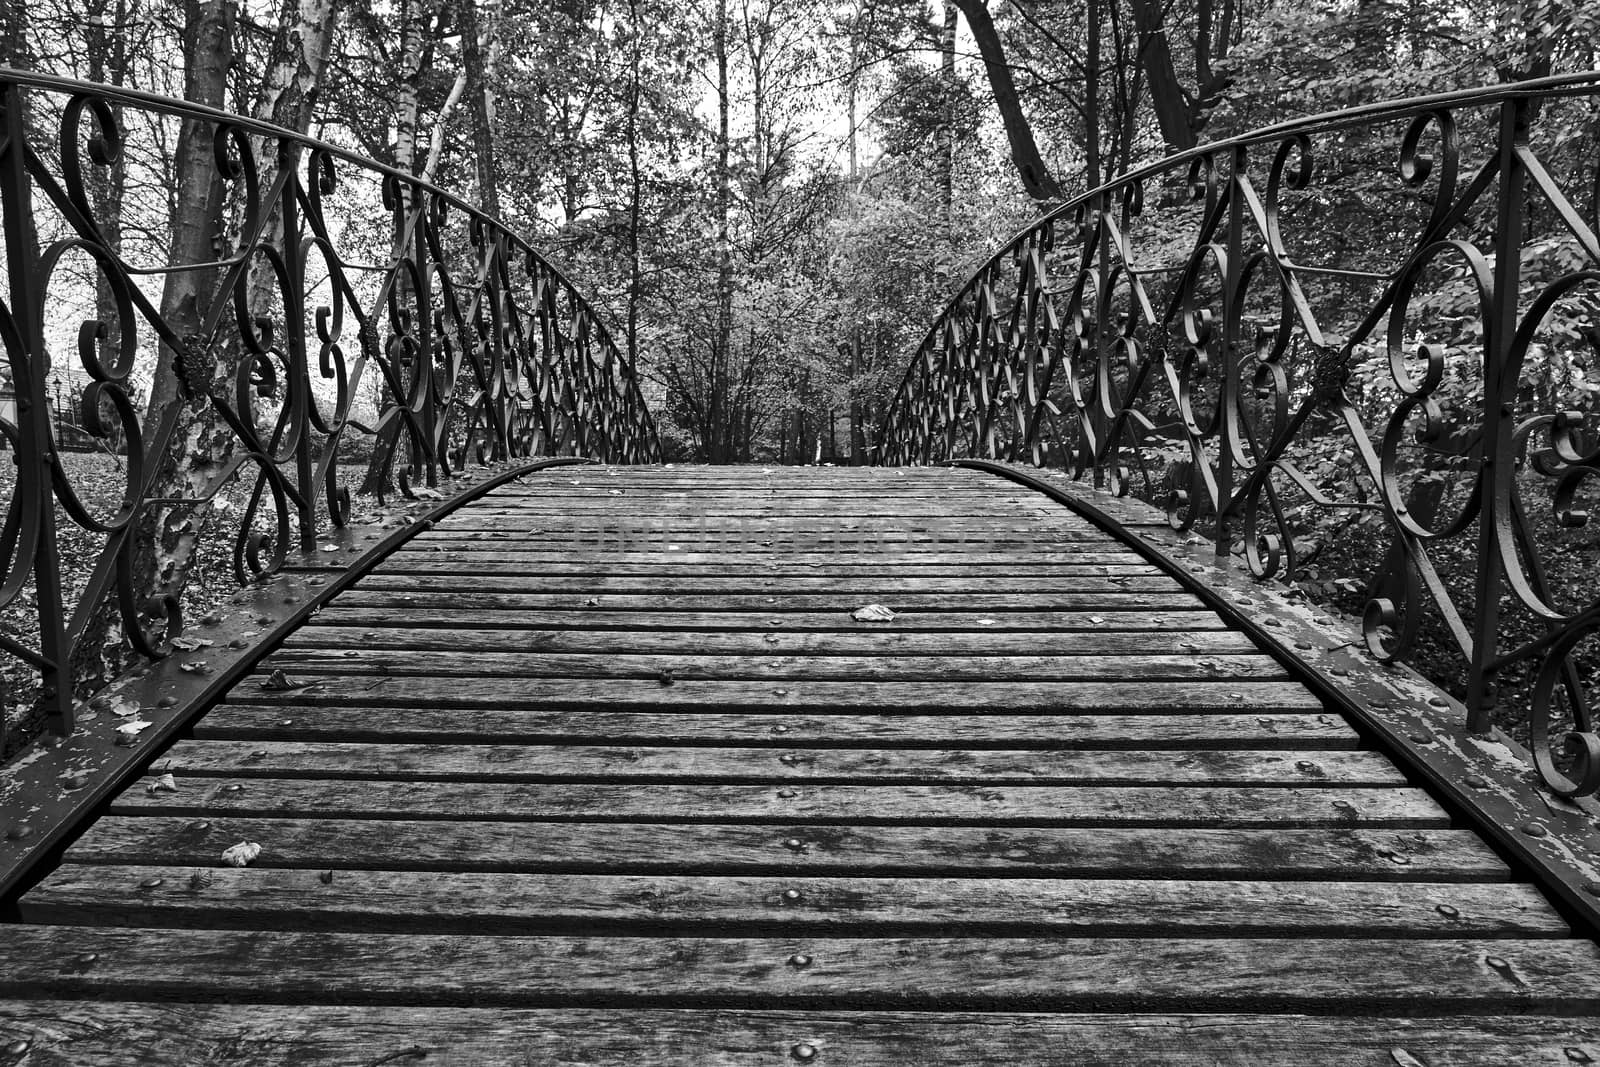 Wooden pedestrian bridge in a park by gkordus